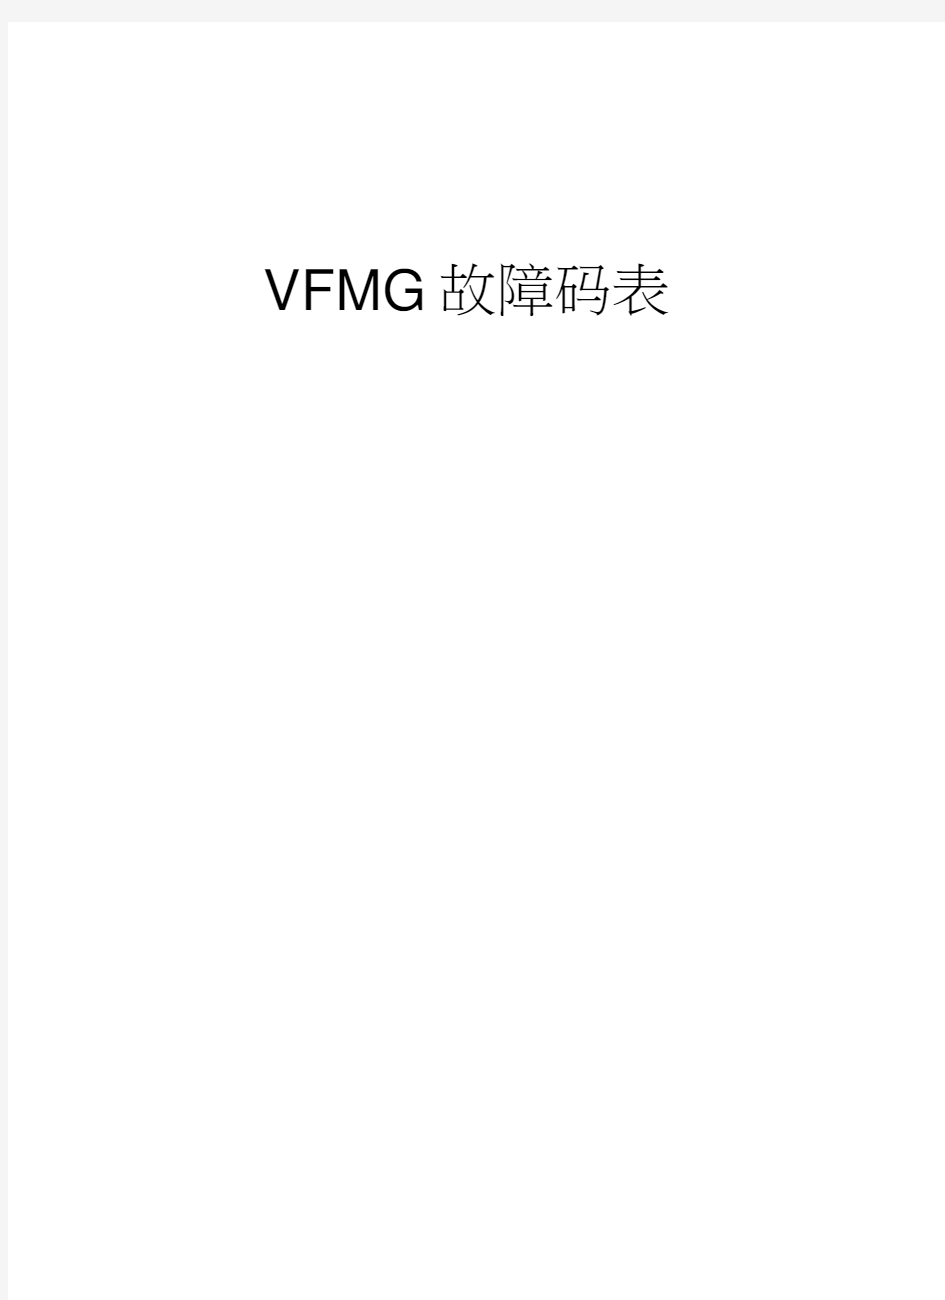 VFMG故障码表教学内容